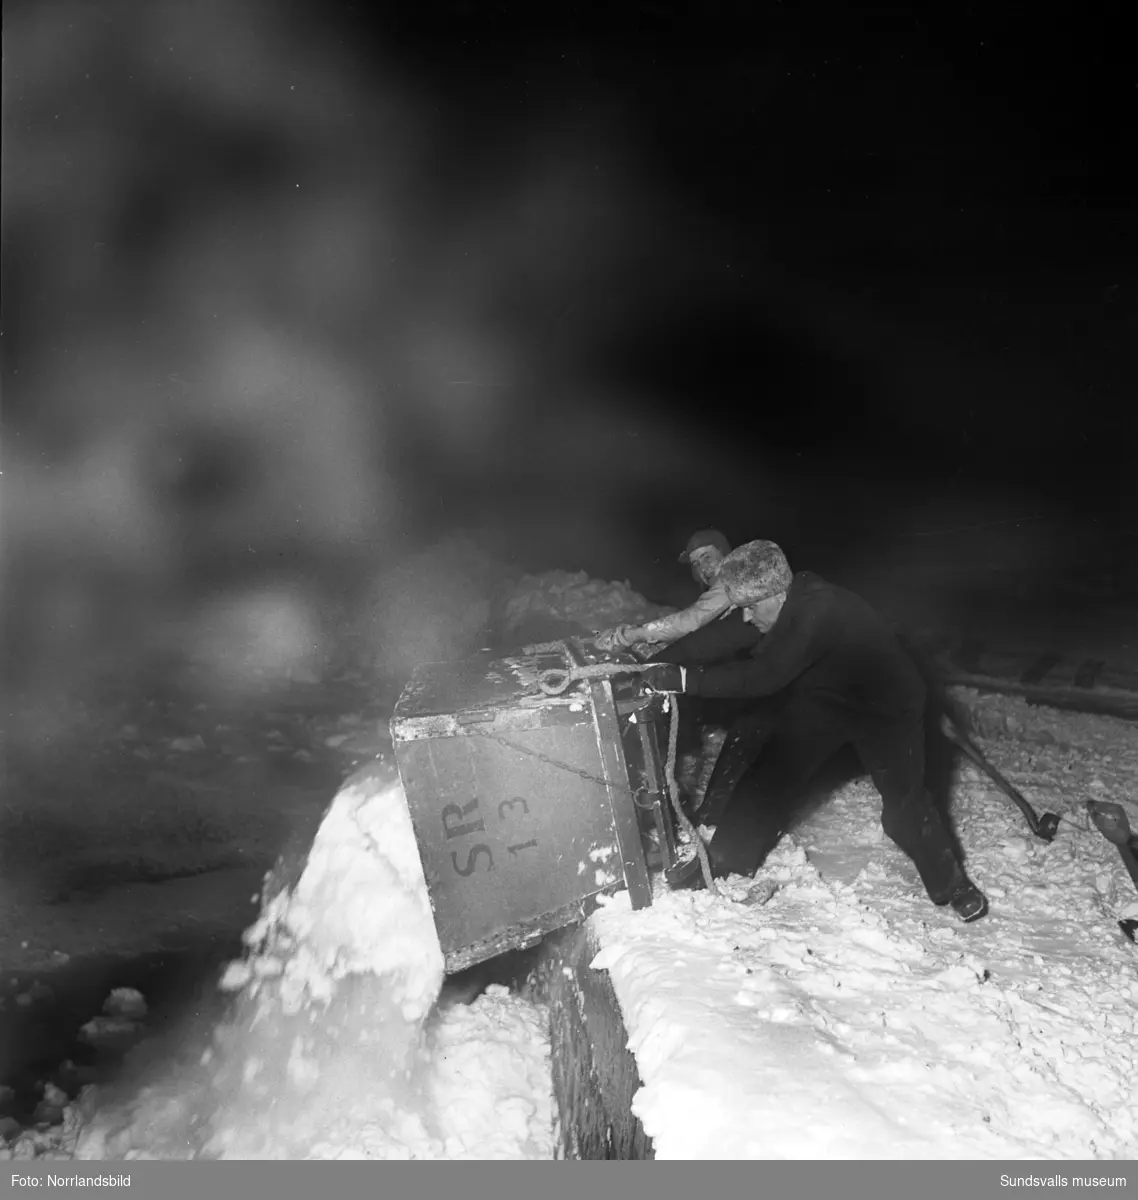 Efter ett rejält snöfall i december 1949 var det full huggning för stadens snöröjare. Elva mil gator och vägar skulle röjas och sandas, själva plogningen sköttes maskinellt men när det sedan var dags för bortforsling av snöhögar och vallar kom de fyrfota trotjänarna fortfarande till sin rätt.  Här är det Axel Svensson som styr Diana nedför Esplanaden för att tippa ännu ett snölass i Selångersån. Renhållningsverket hade 60 man i personalstyrkan vid den här tiden och hade tillgång till 15 lastbilar, varav tre moderna framhjulsdrivna som var mycket användbara i den backiga terrängen, elva snöplogar och två traktorer med snöskopa. Och så de åtta hästarna förstås. Vid katastroftillbud med osedvanlig halka eller hård snöstorm kunde man dessutom ta in 20-30 extra hästar och 20-100 extra arbetare. Den här vintern såg verkets chef, A.S. Nilsson, mycket fram emot en nymodighet på ingång till maskinparken, nämligen snöslungan. Bakom hästekipaget på en av bilderna syns den numera rivna biografen Röda Kvarn.